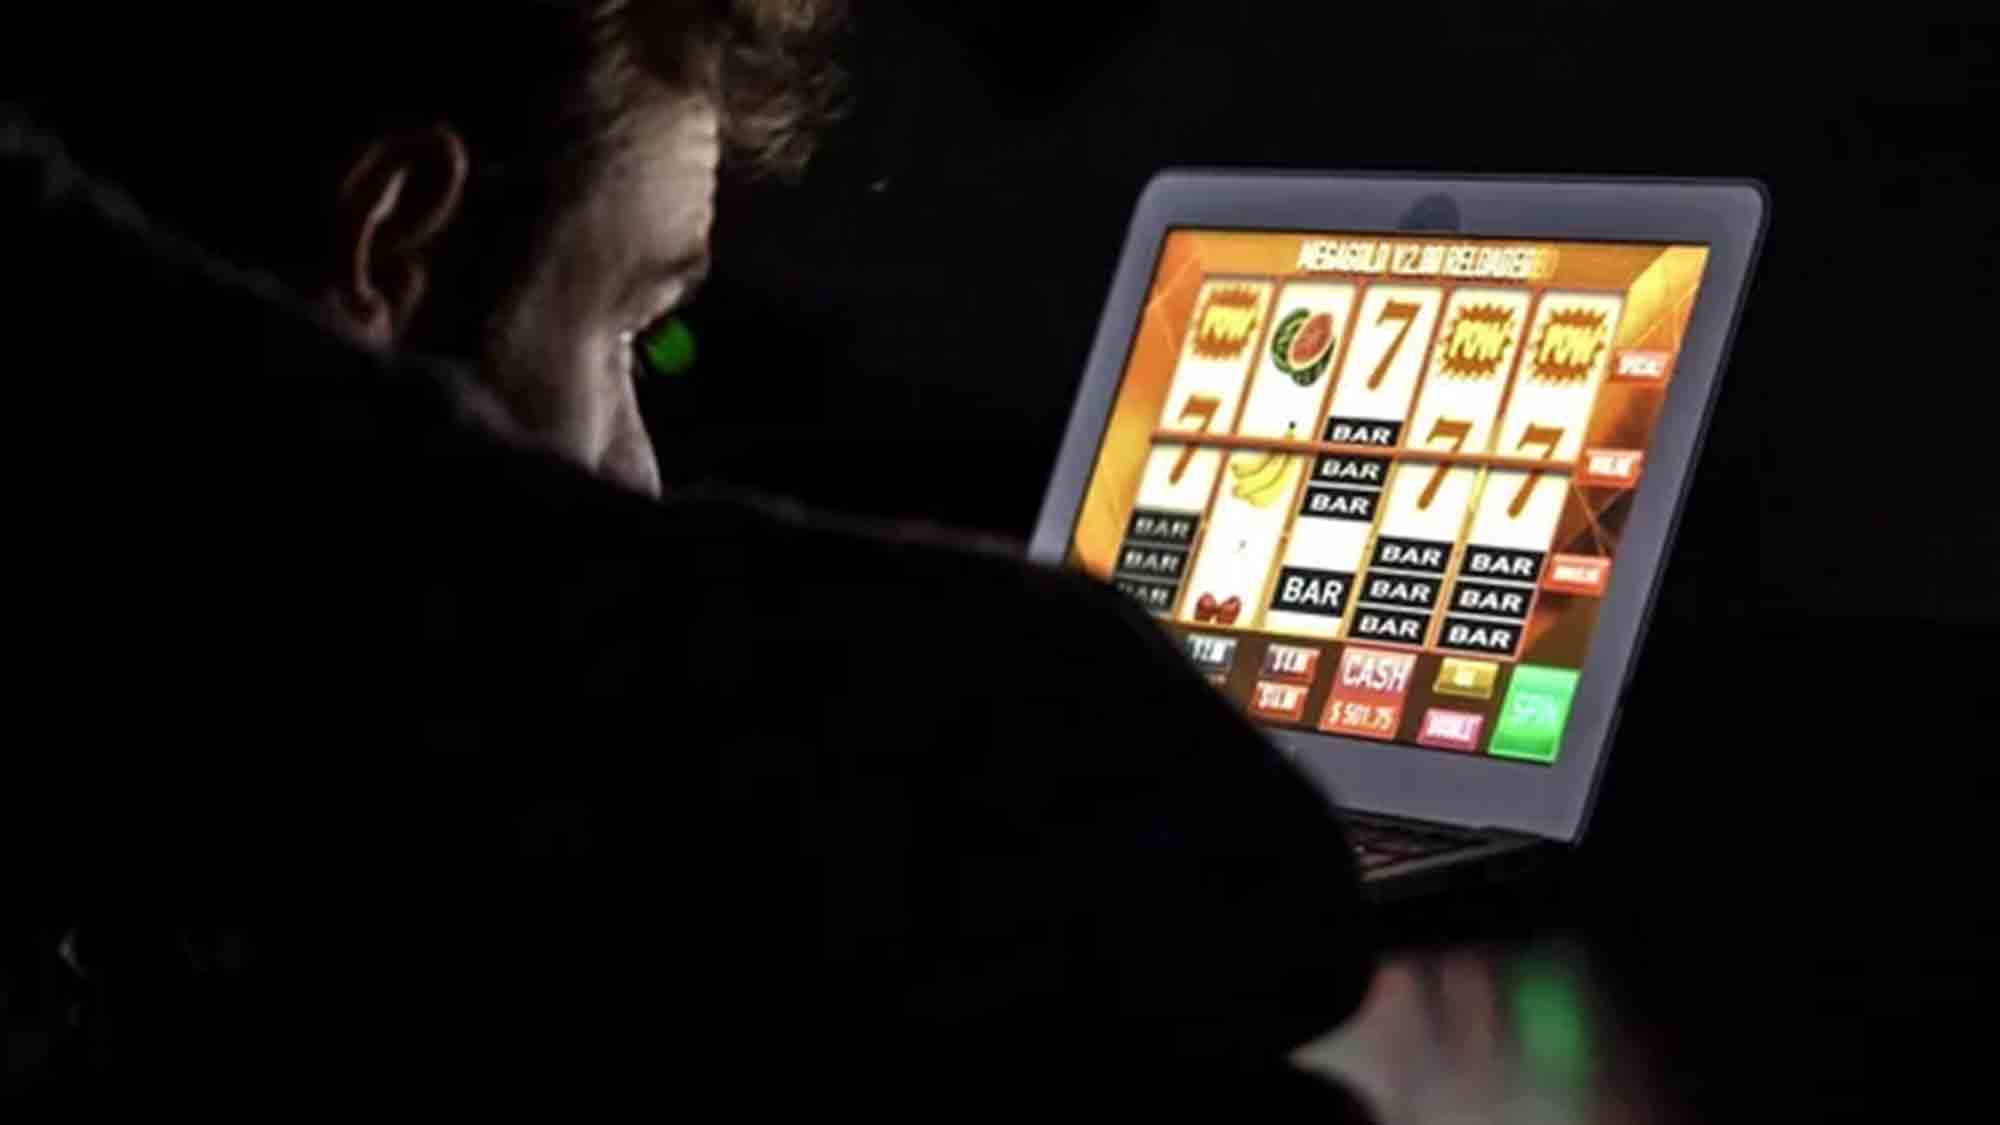 KI bei Finanzen und beim Glücksspiel, auch im Online Casino geht es um Geld